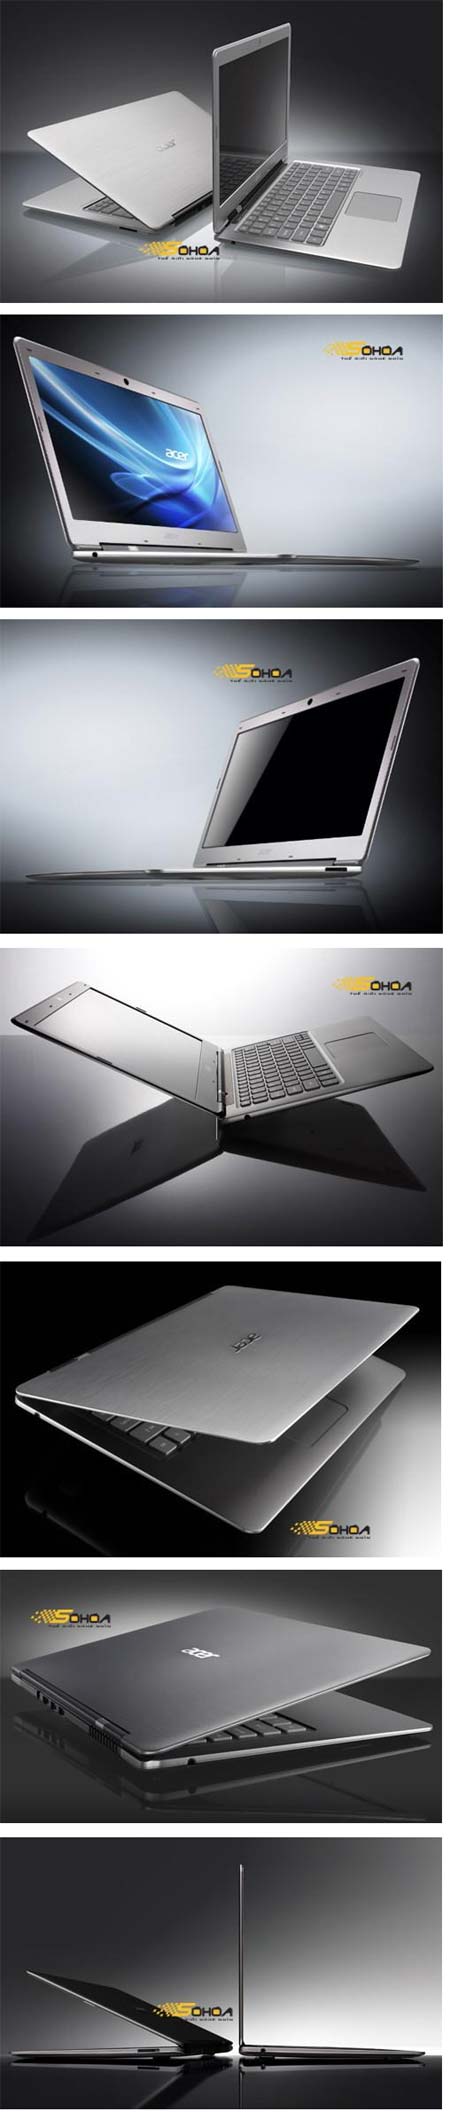 Ультра-тонкий лэптоп Acer Aspire 3951